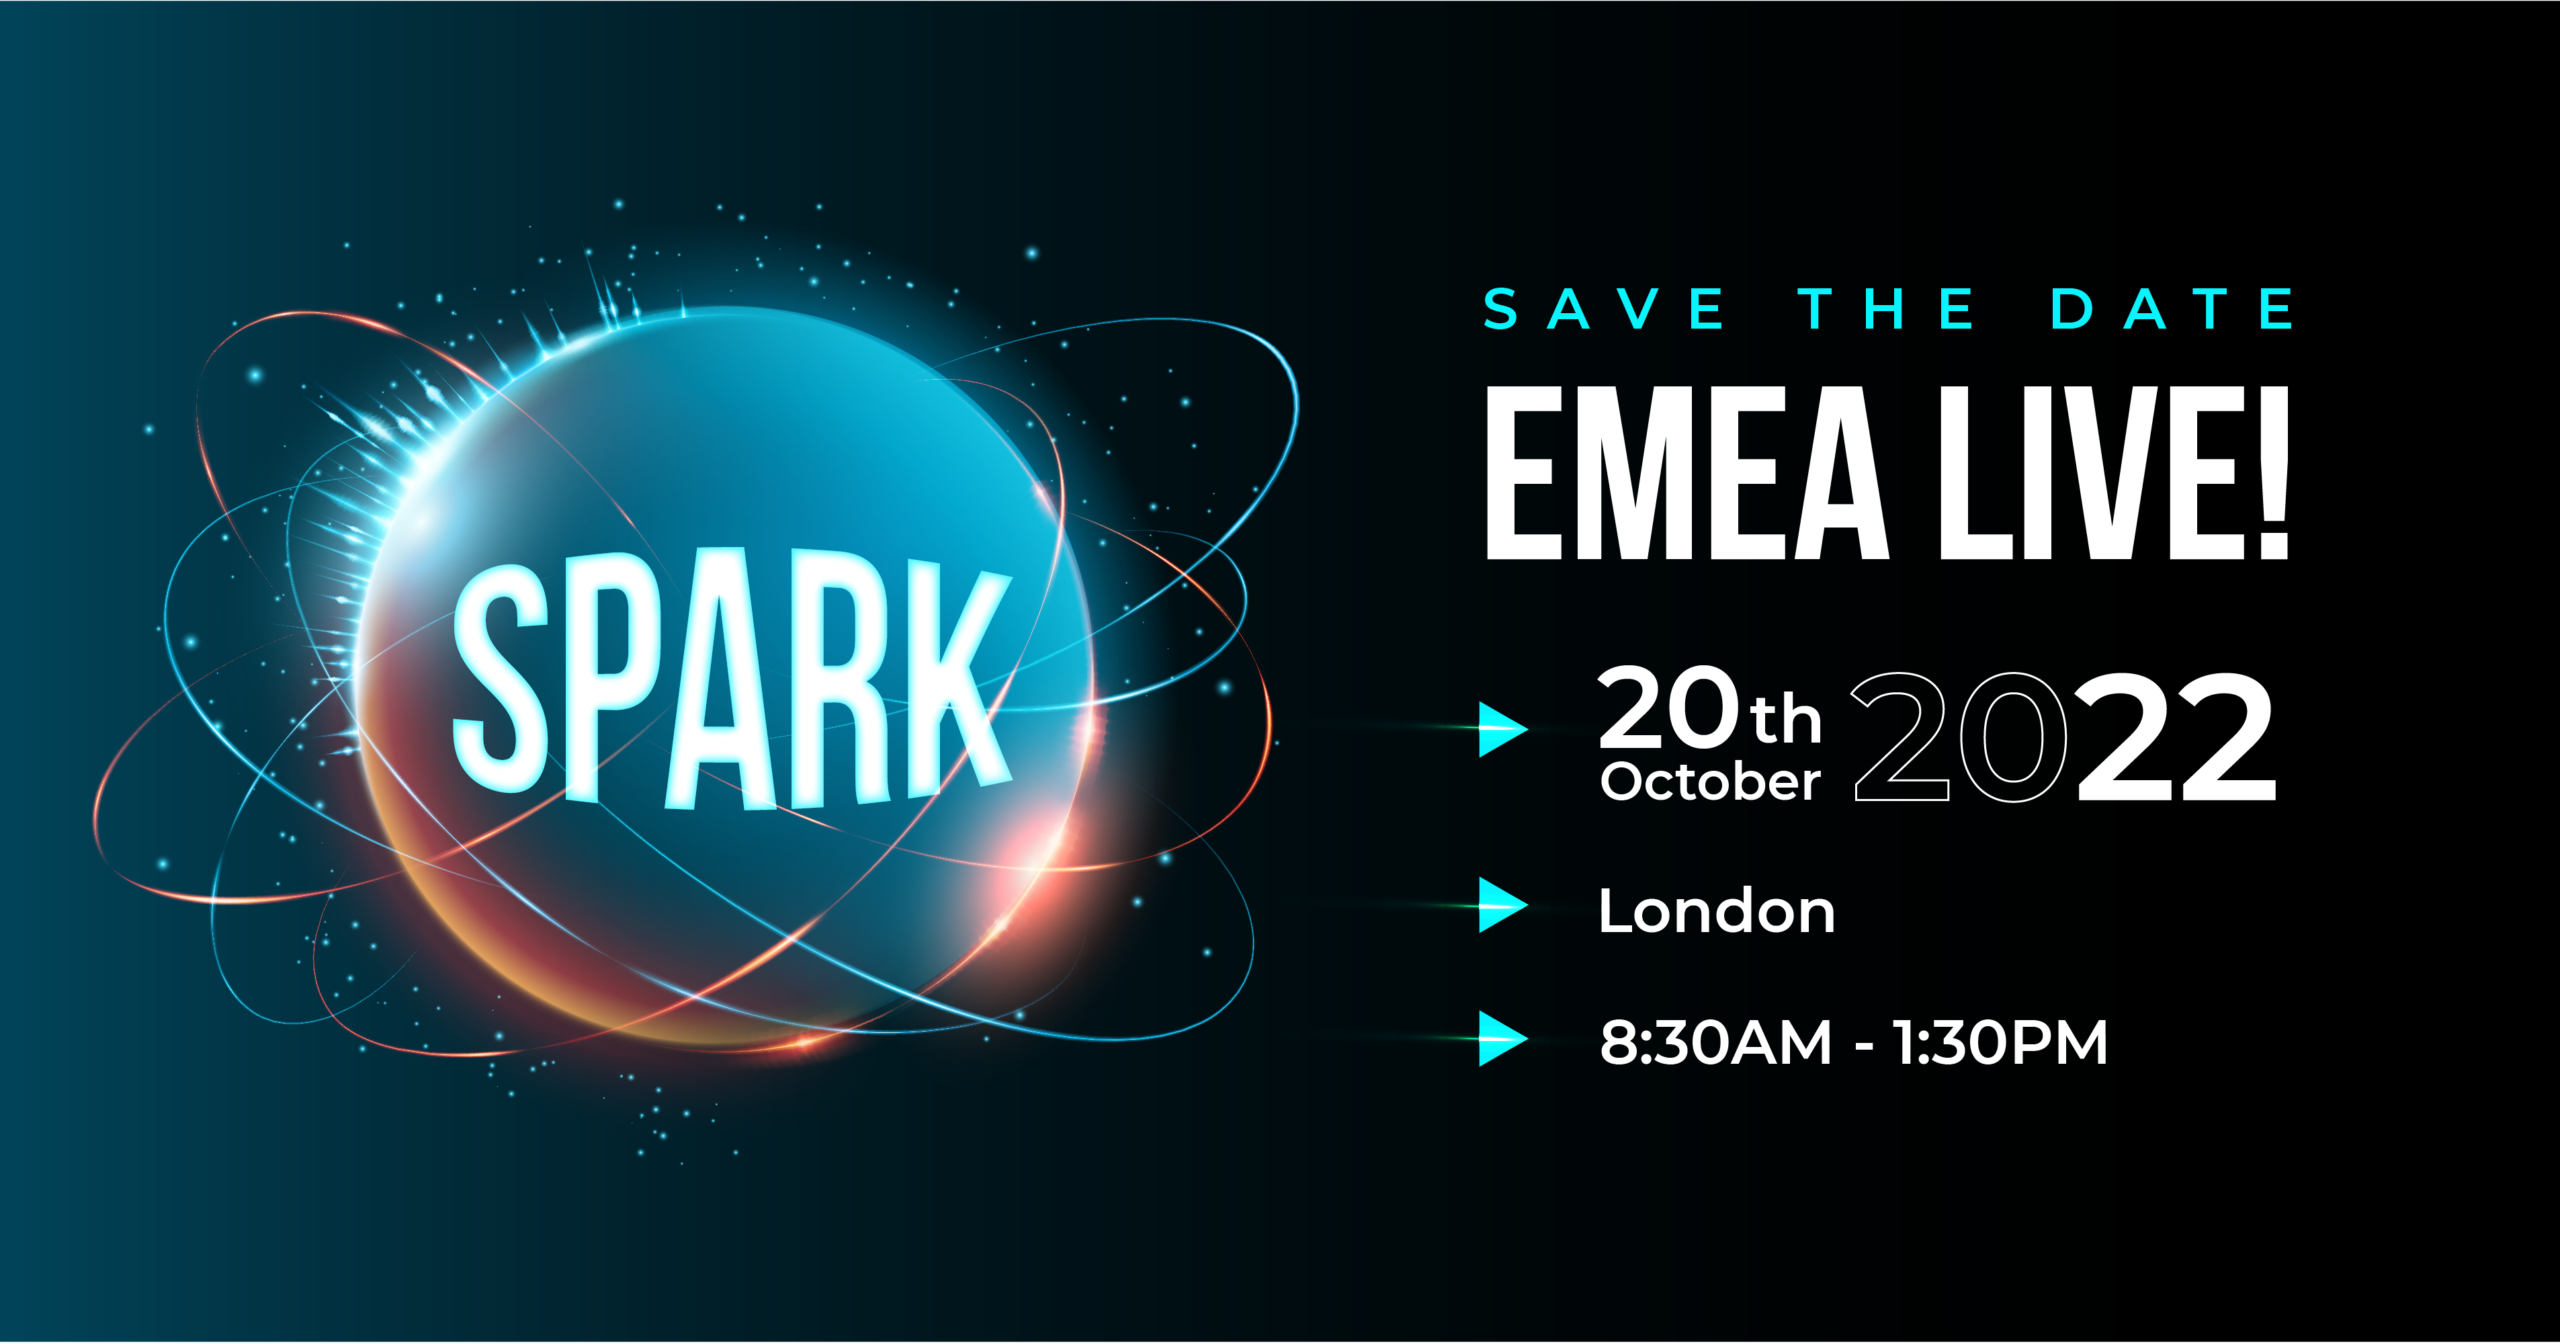 SPARK EMEA LIVE in London | Thursday 20th October 2022